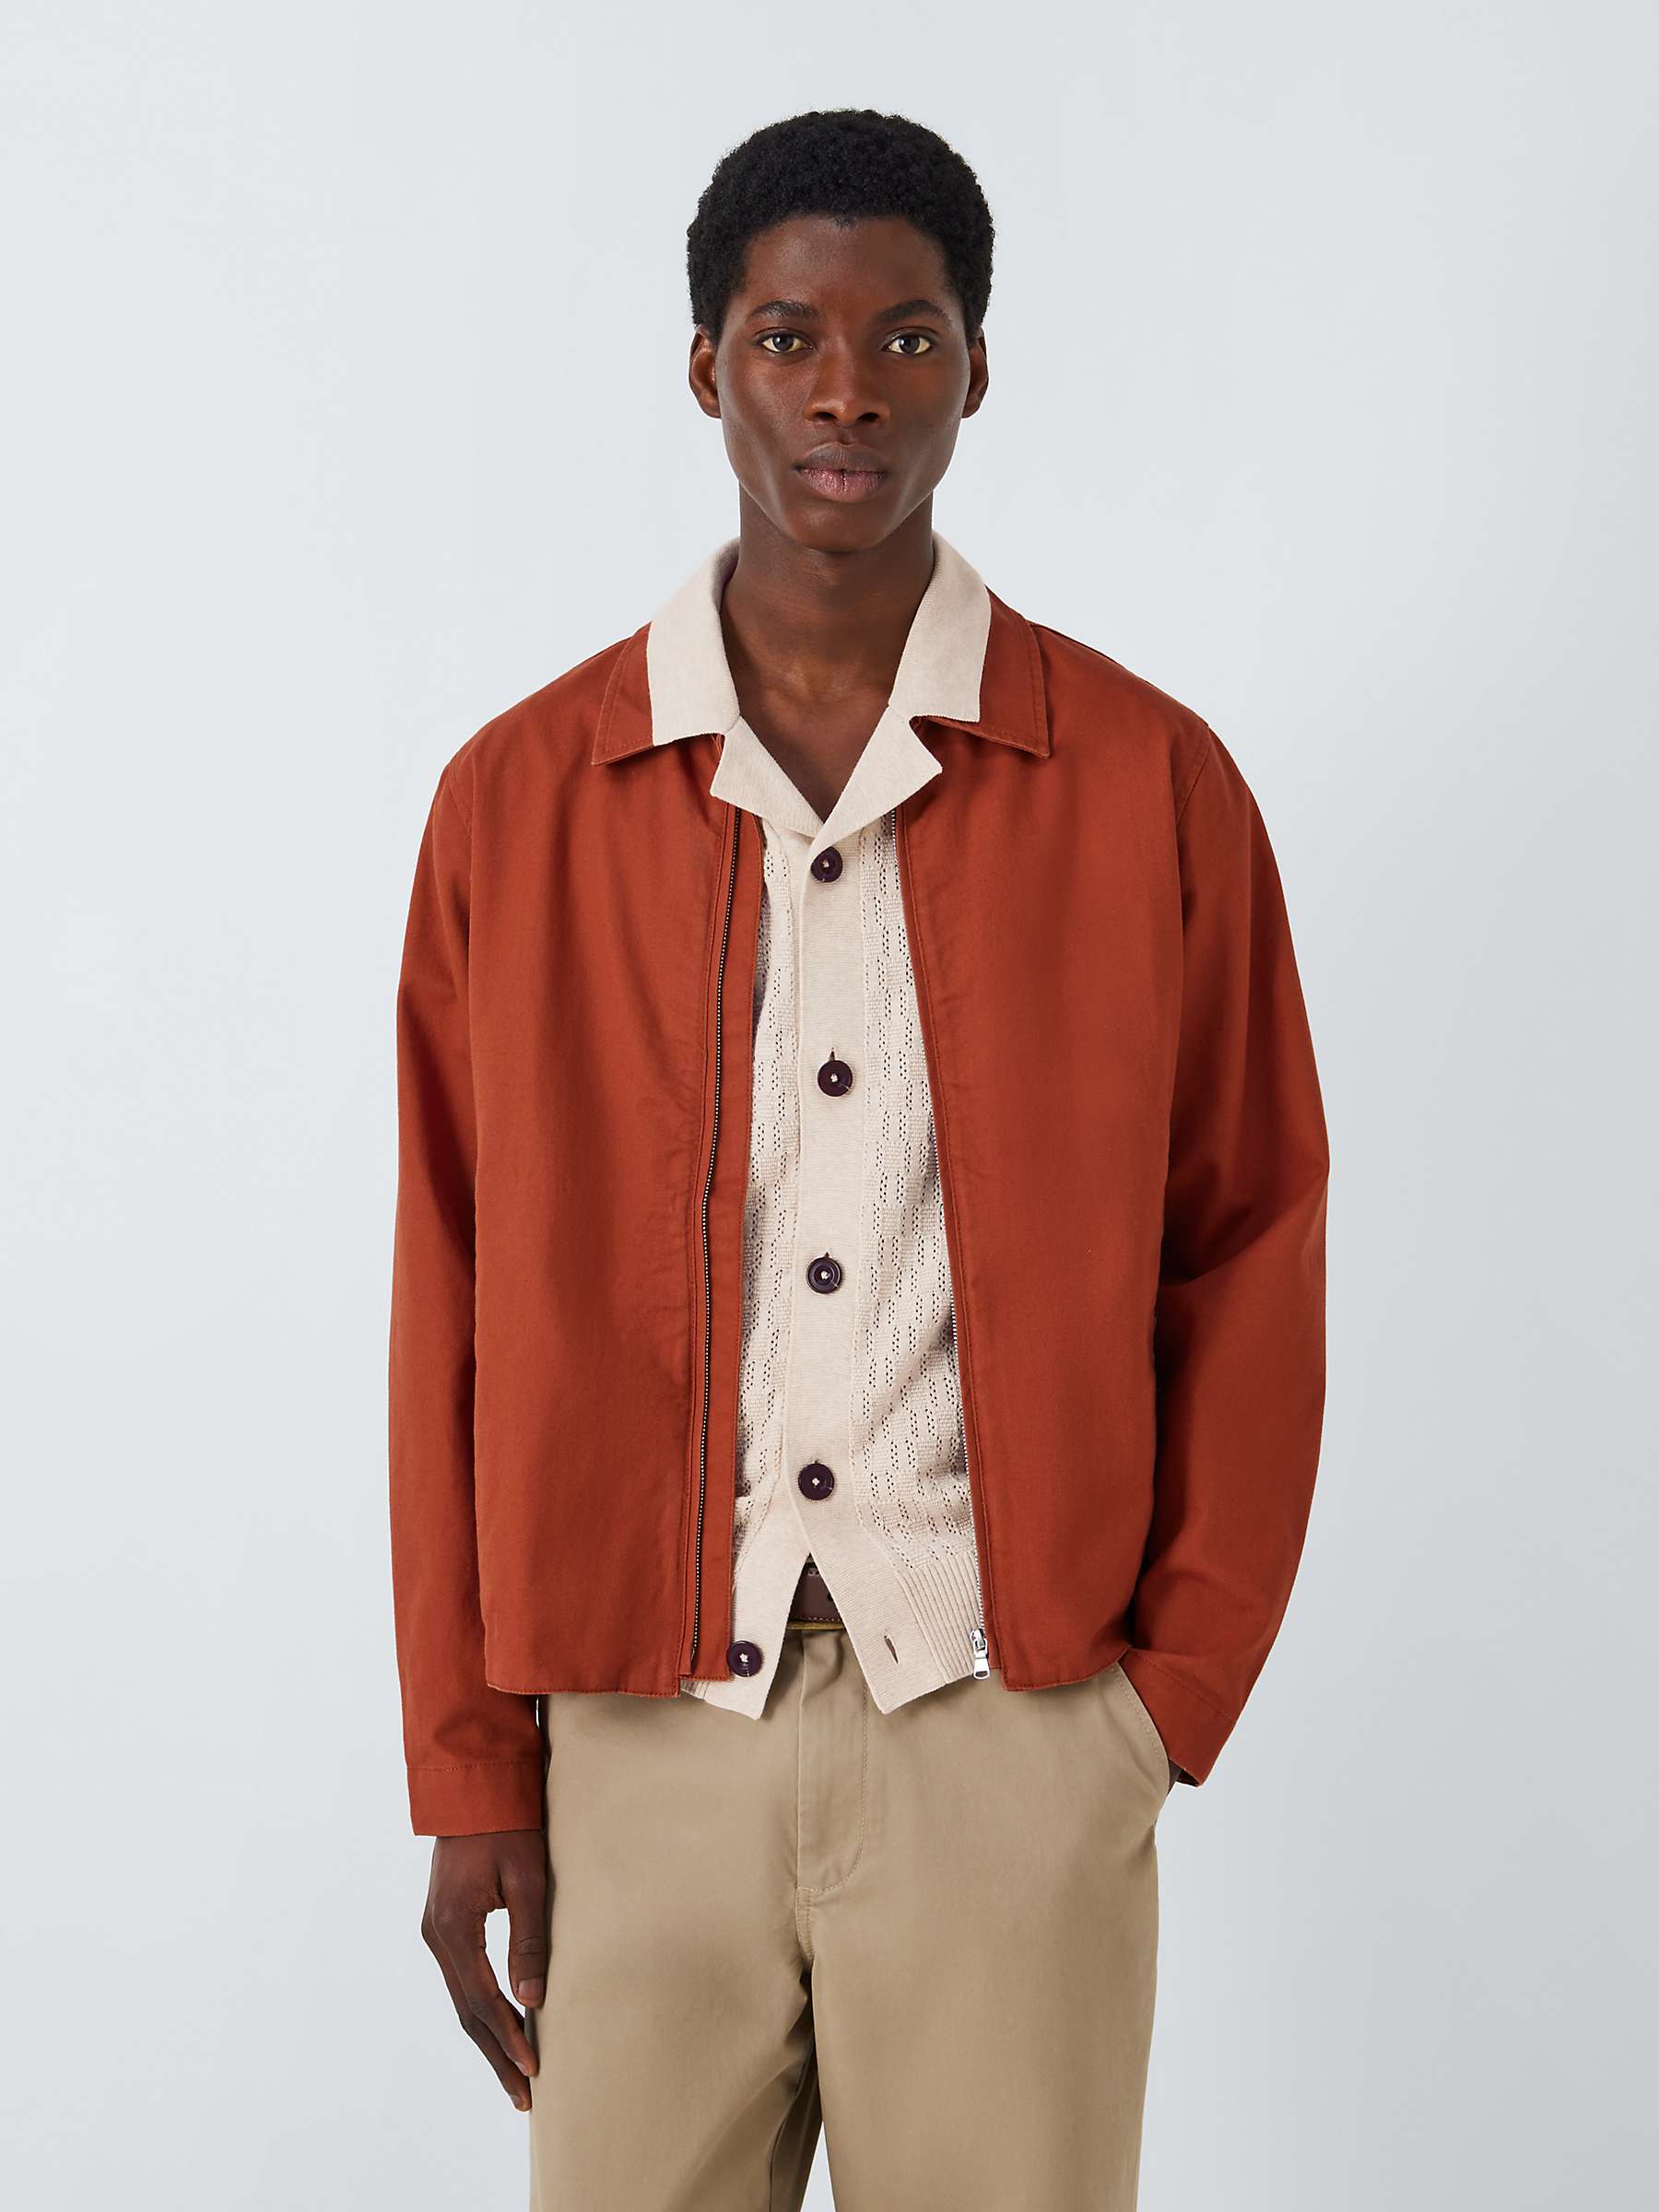 Buy John Lewis Men's Cotton Linen Zip Jacket Online at johnlewis.com